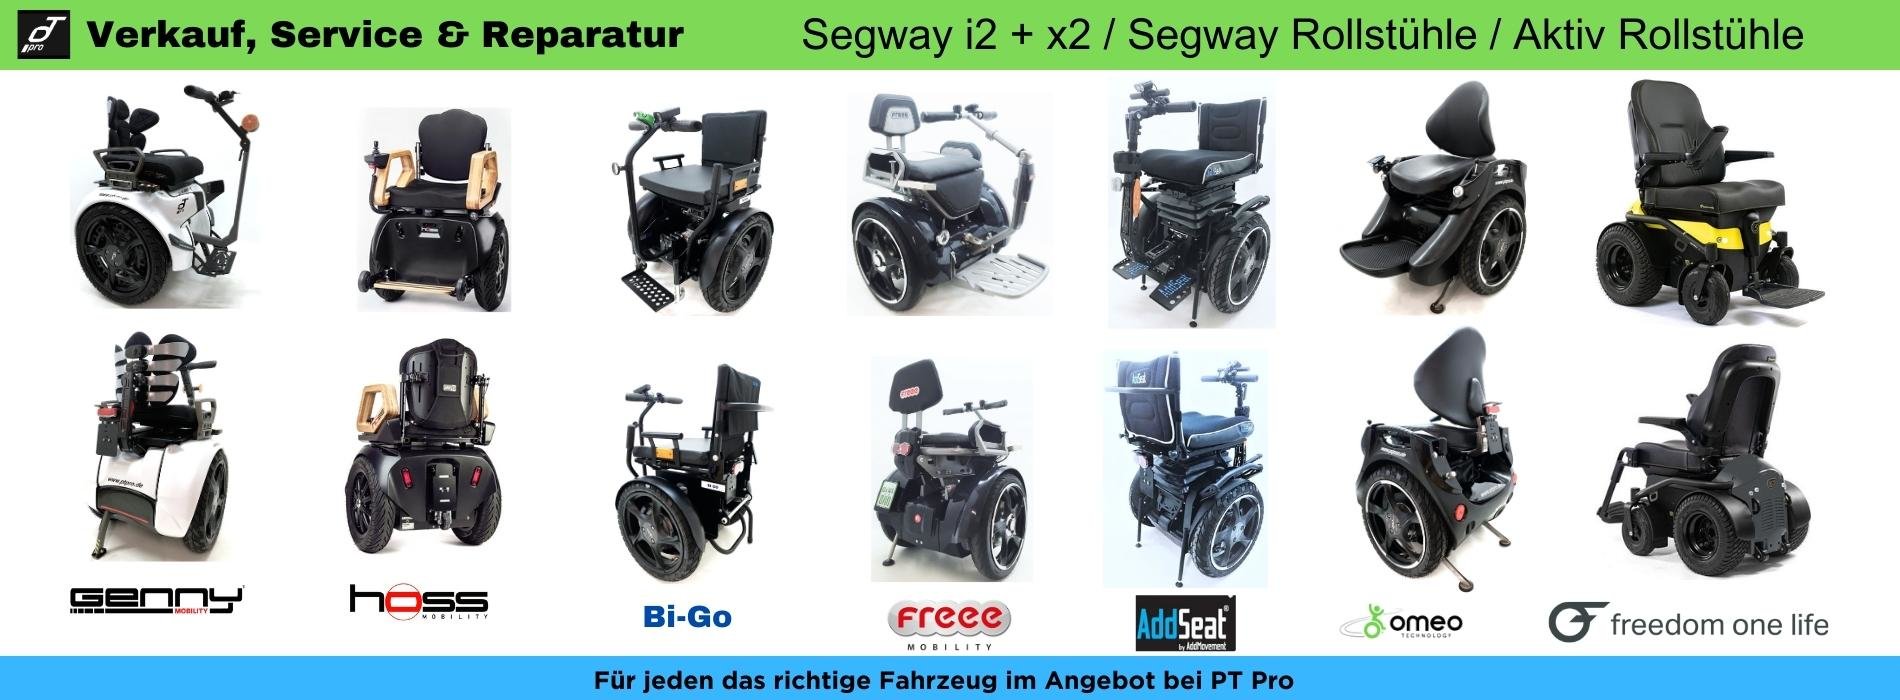 Onroad Rollstuhl & Segway